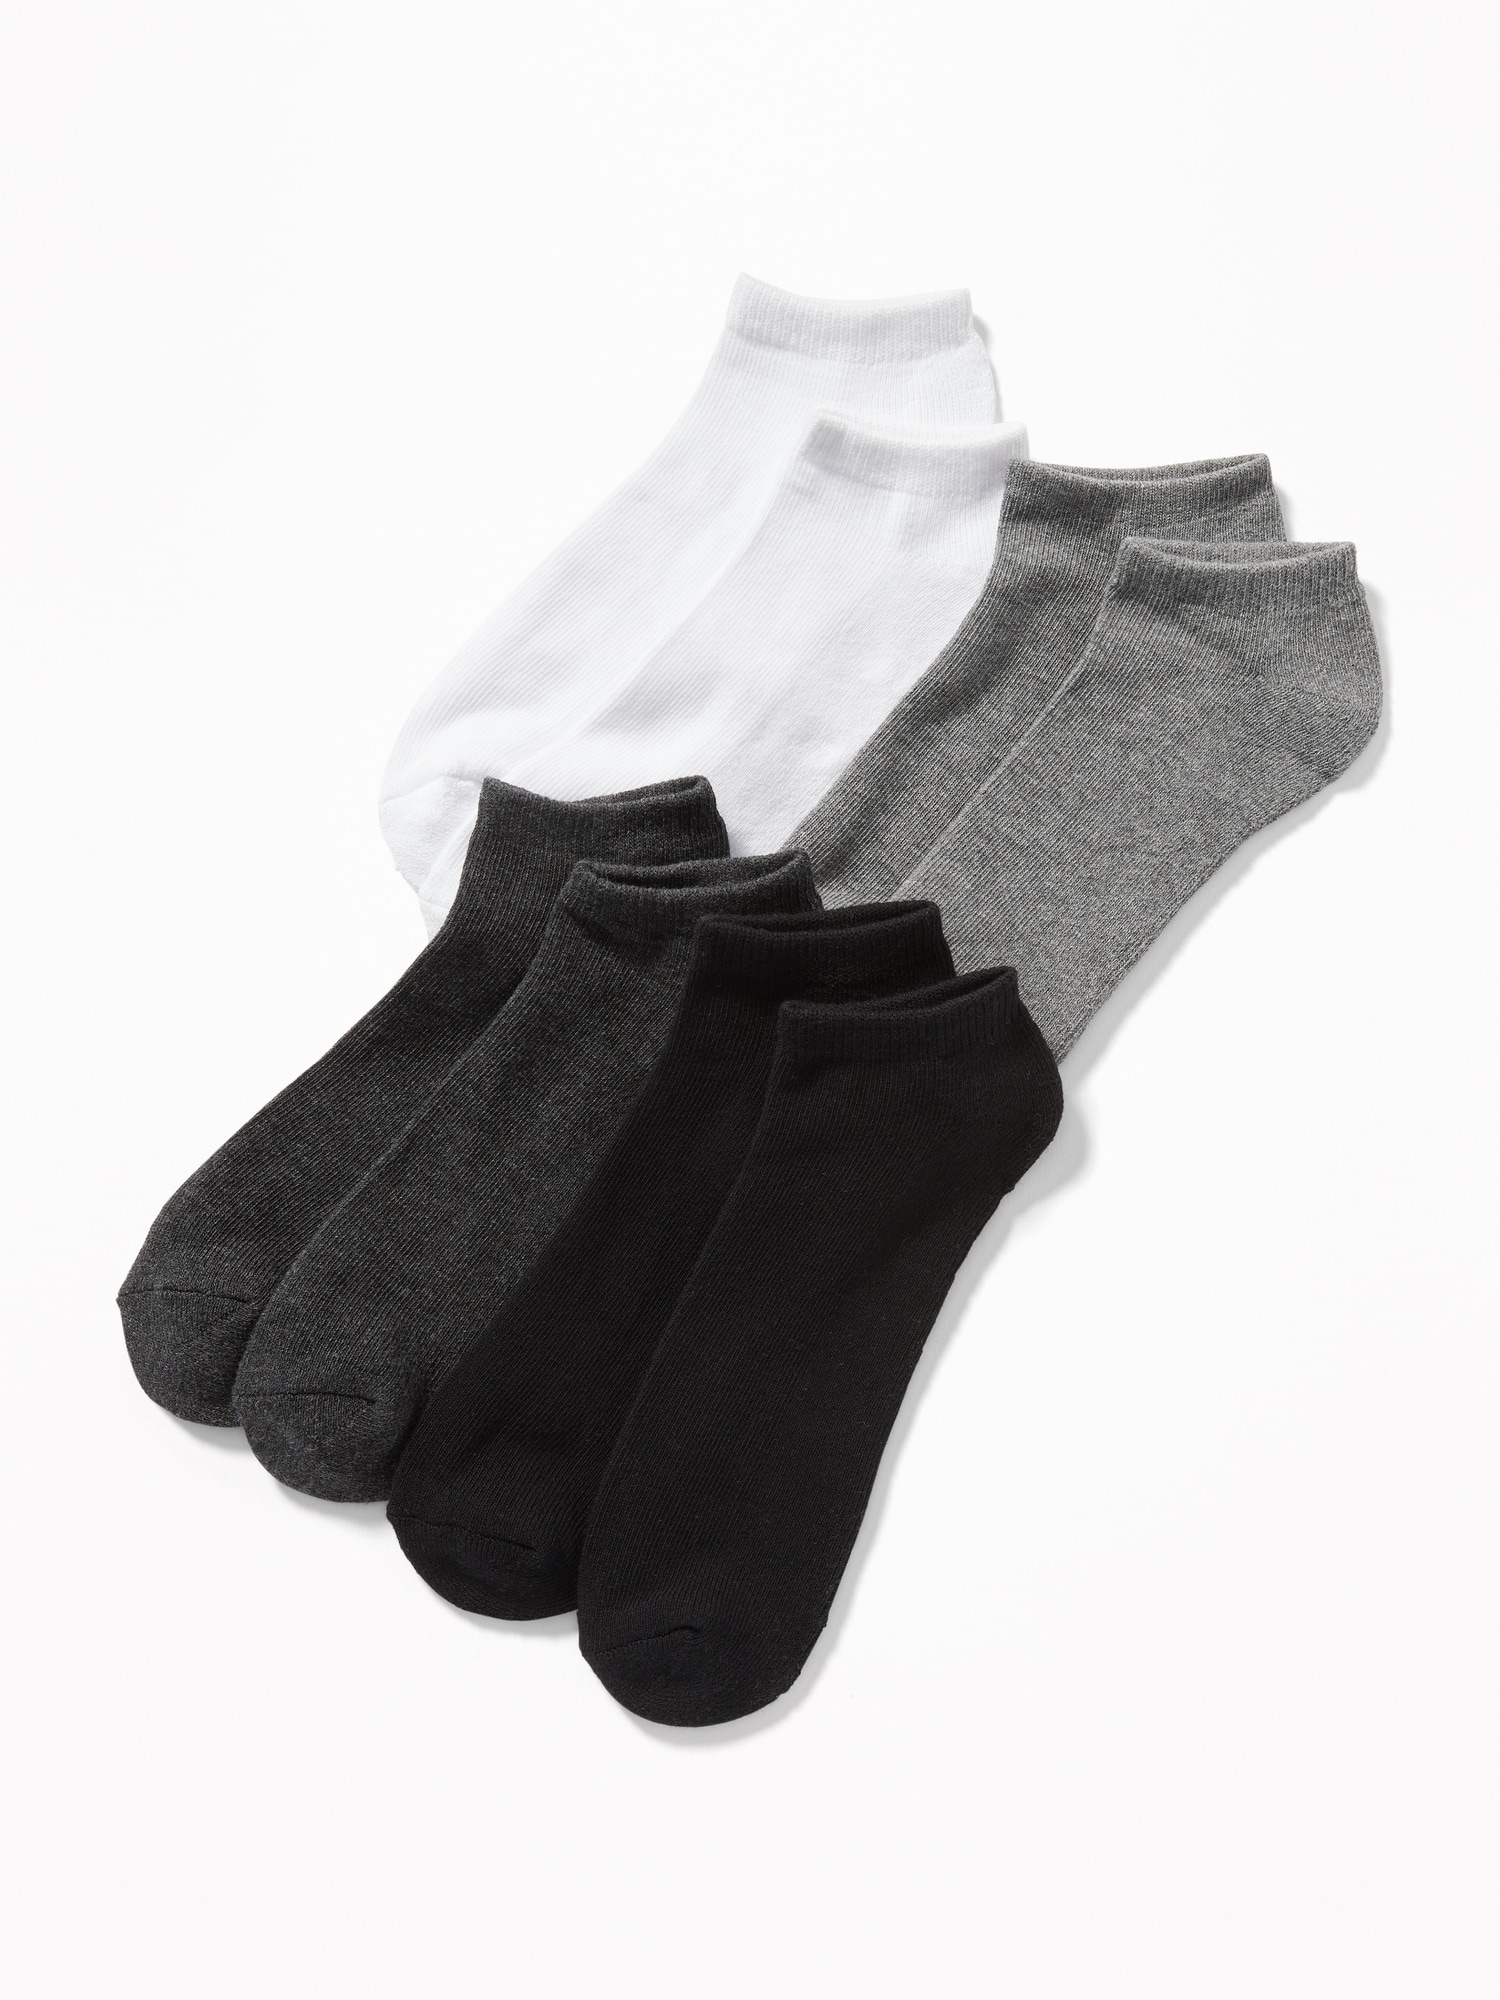 socks for men